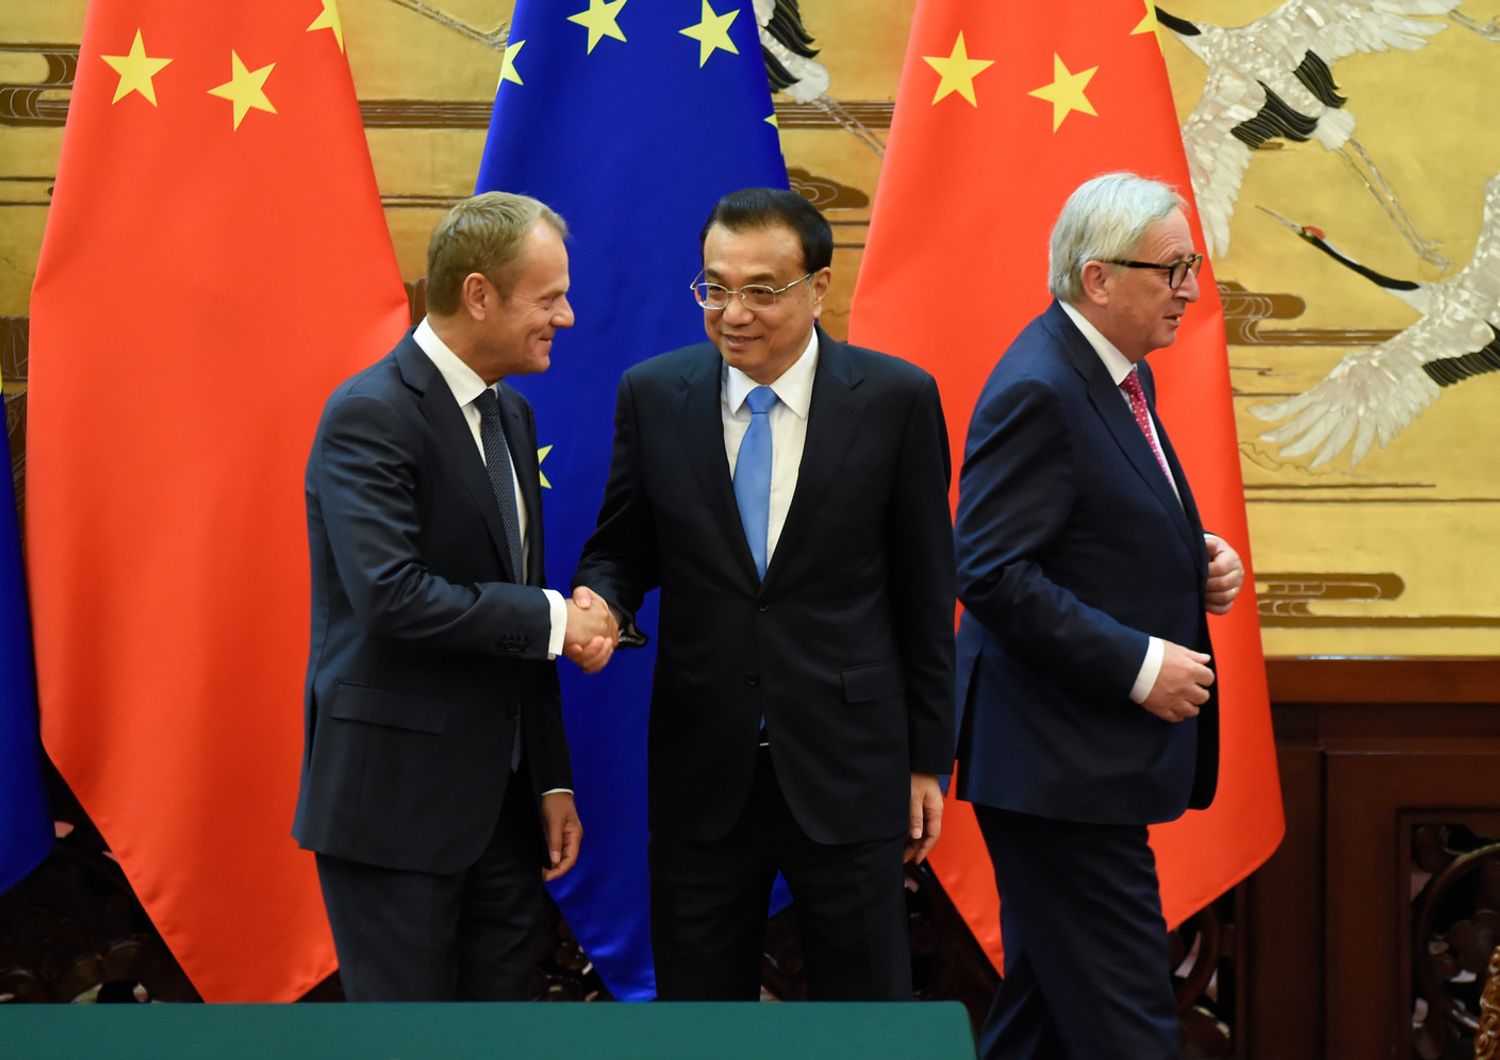 Cos&igrave; i dazi di&nbsp;Trump&nbsp;hanno spinto l&#39;Europa nelle braccia di Pechino